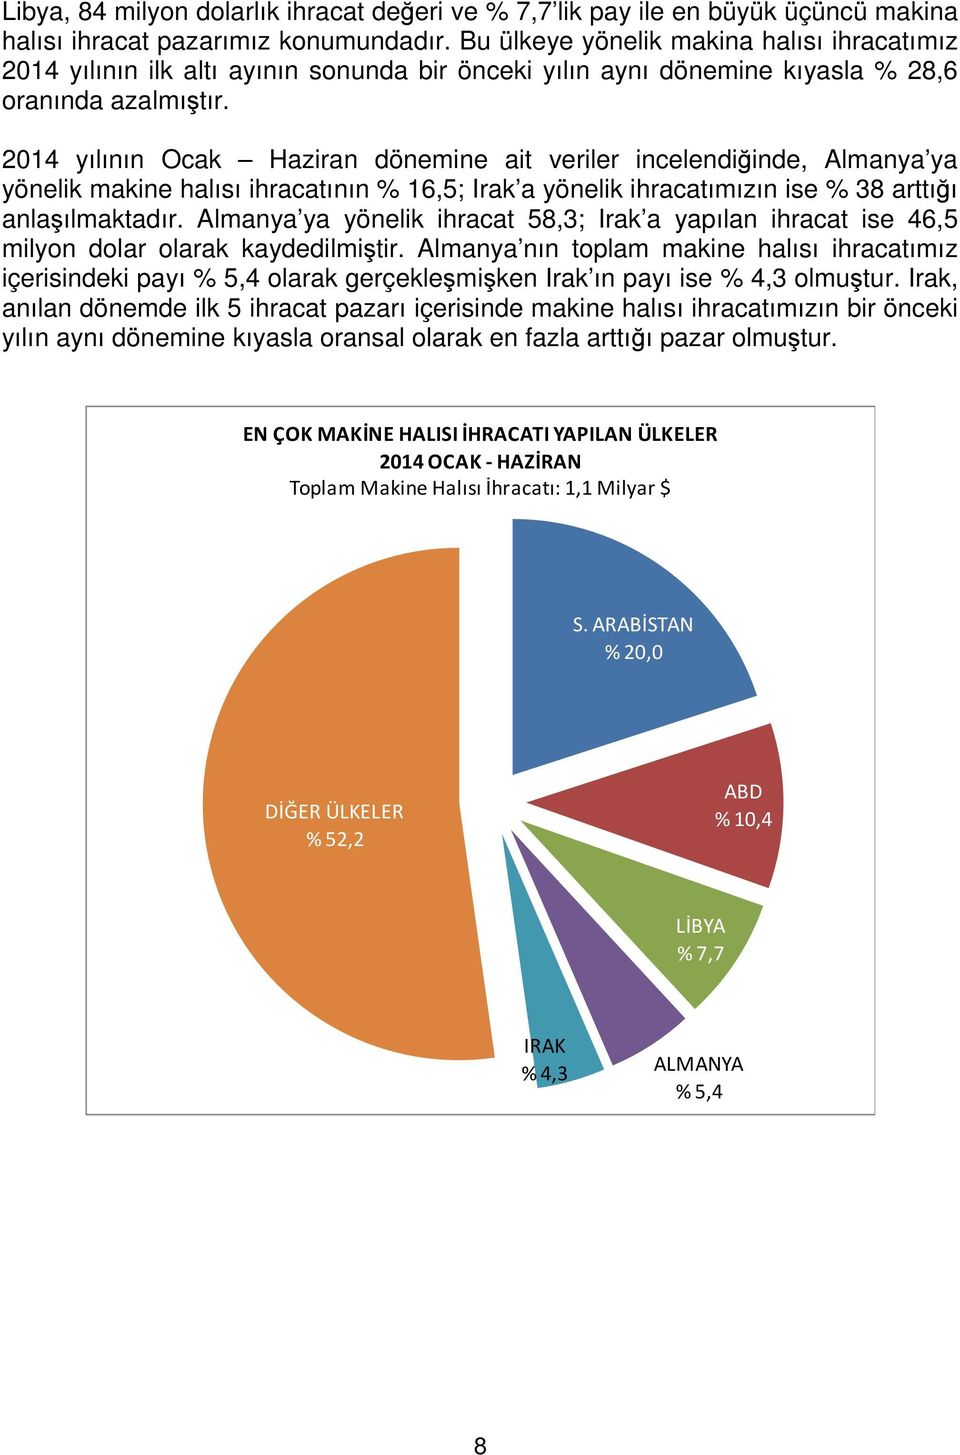 2014 yılının Ocak Haziran dönemine ait veriler incelendiğinde, Almanya ya yönelik makine halısı ihracatının % 16,5; Irak a yönelik ihracatımızın ise % 38 arttığı anlaşılmaktadır.